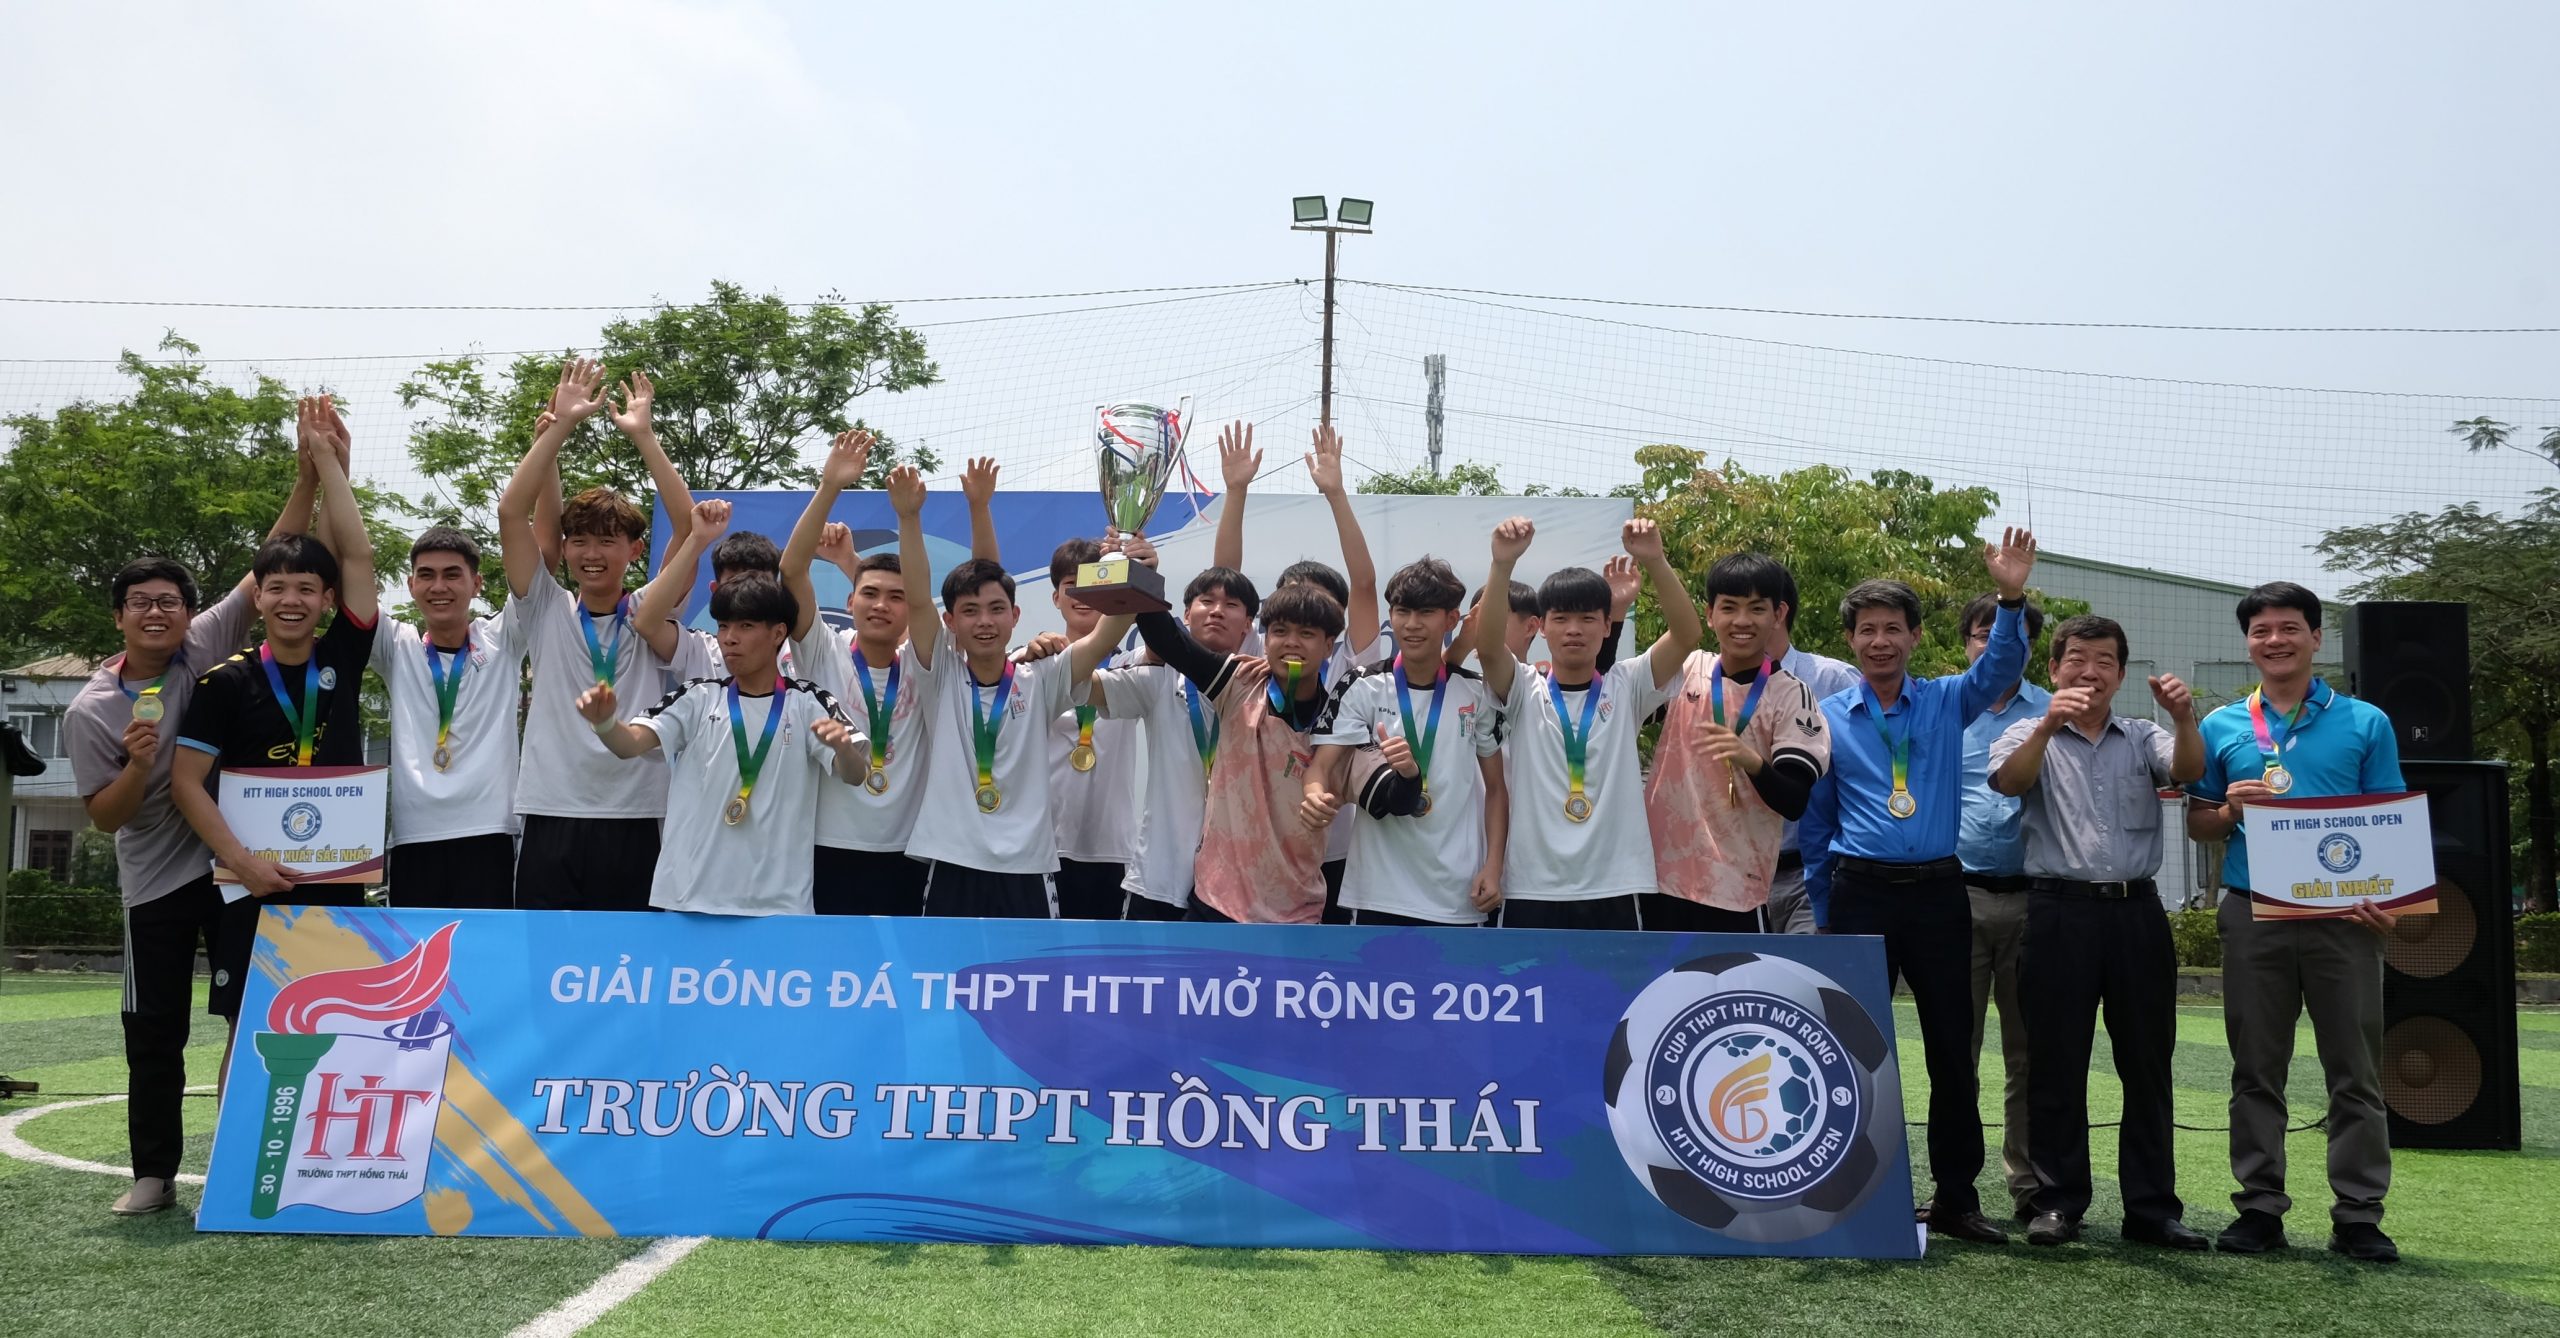 Chung kết và bế mạc giải bóng đá THPT HTT mở rộng 2021